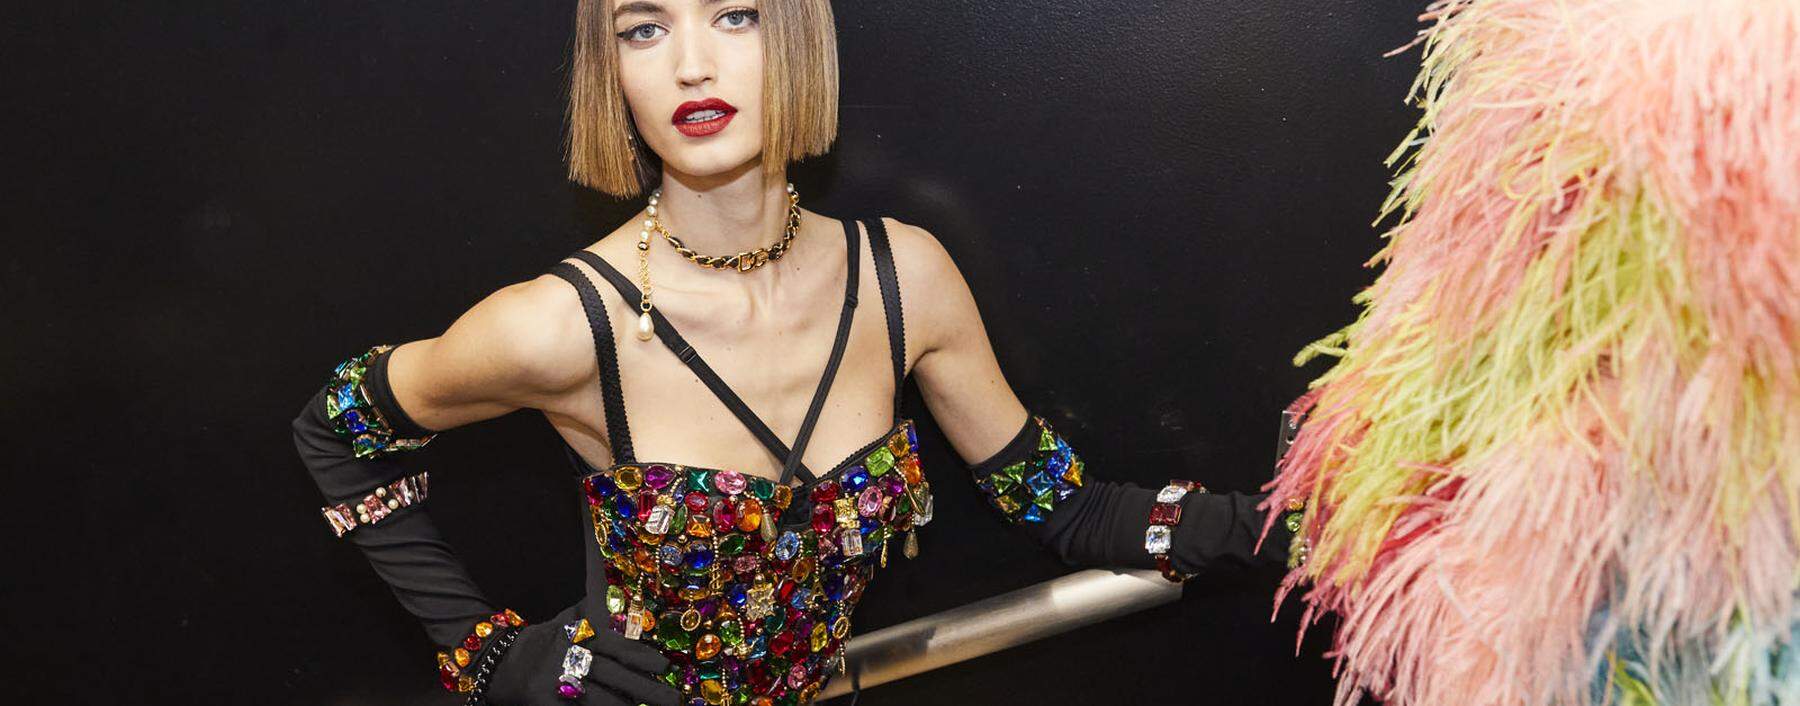 Dolce & Gabbana erlebten in den Neunzigerjahren ihre Blütezeit.